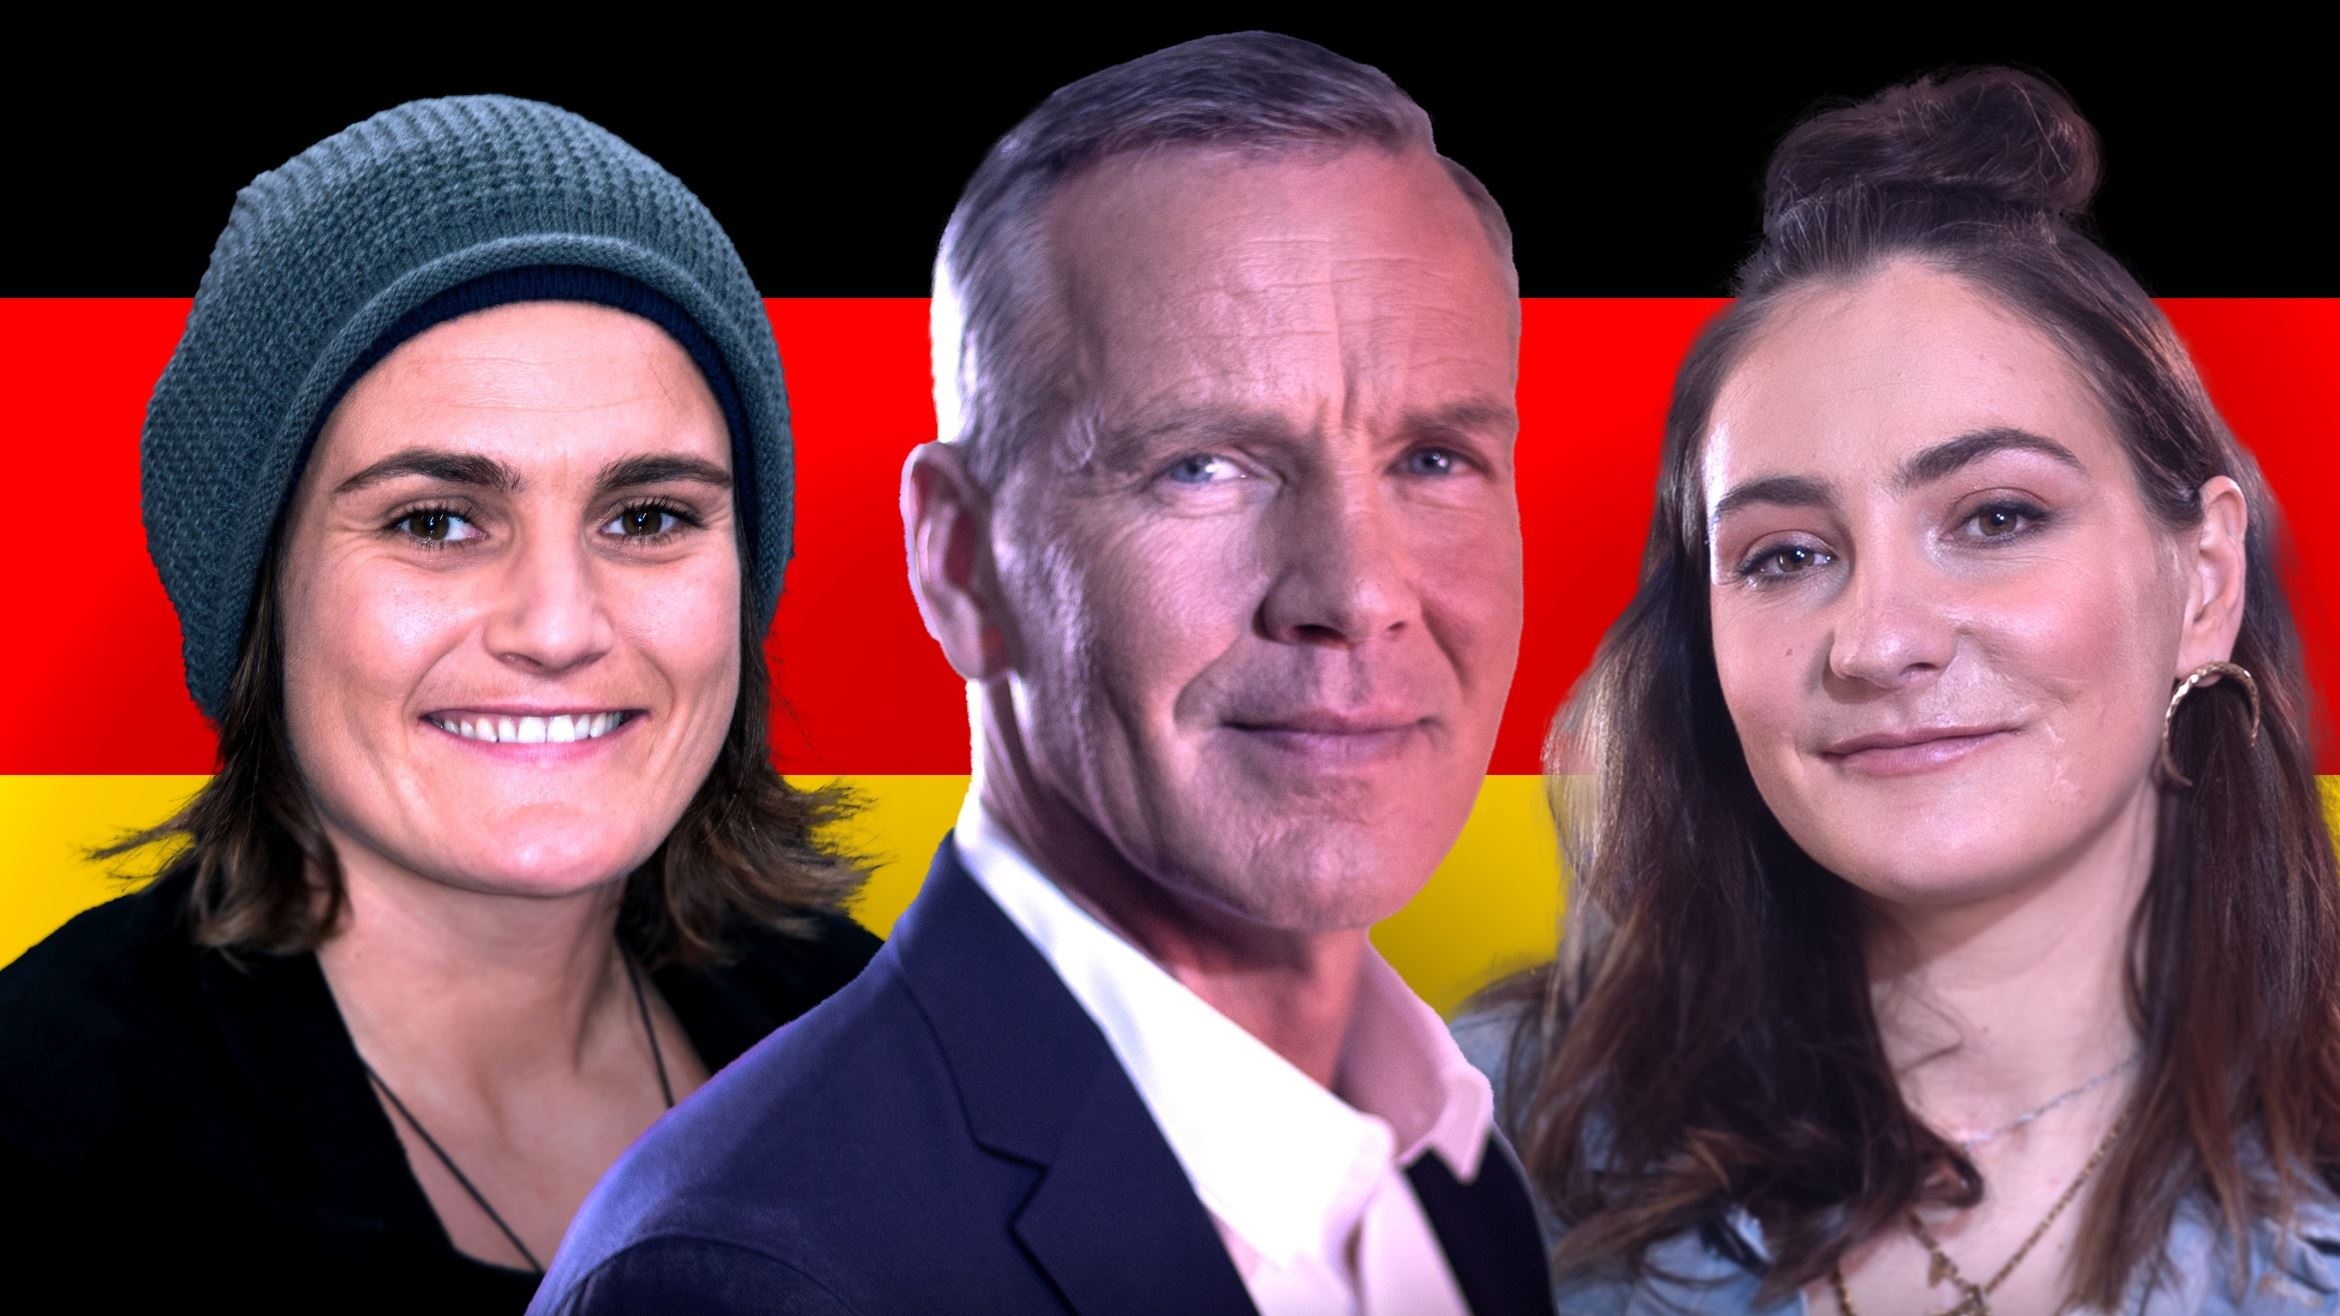 Nadine Angerer, Henry Maske und Kristina Vogel (v.l.n.r.) in "Deutschlands Sportstars" - 